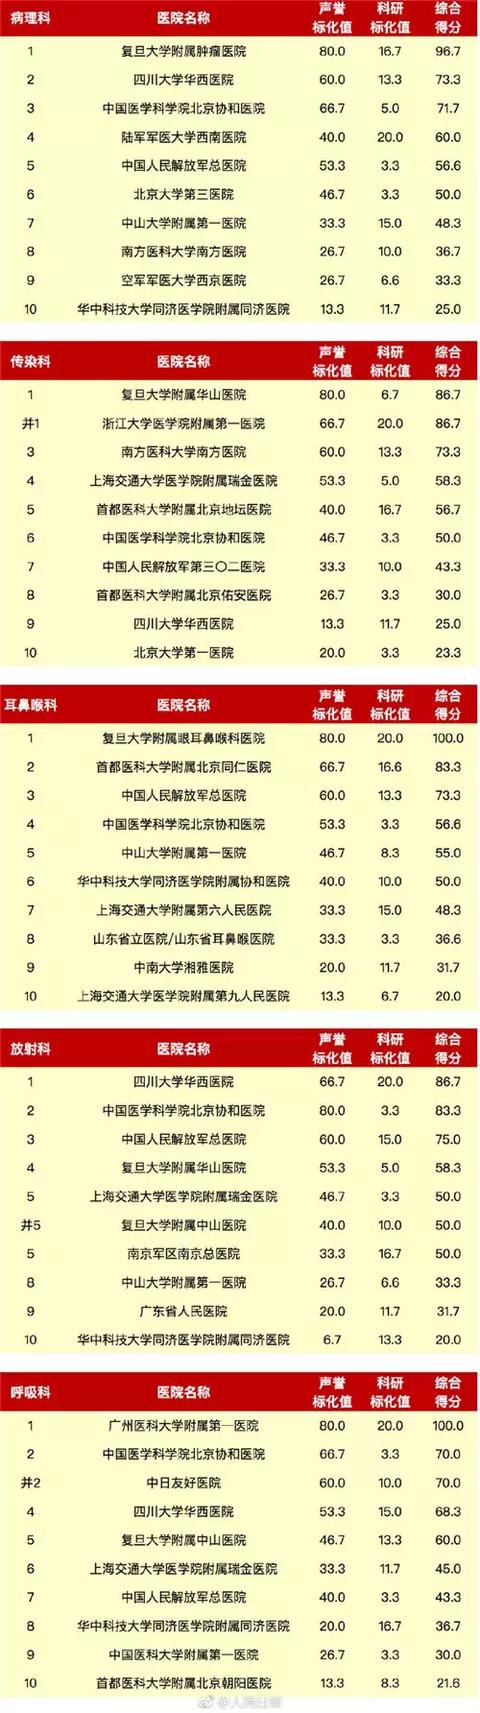 最新中国医院综合排行榜出炉 云南仅有这家医院上榜